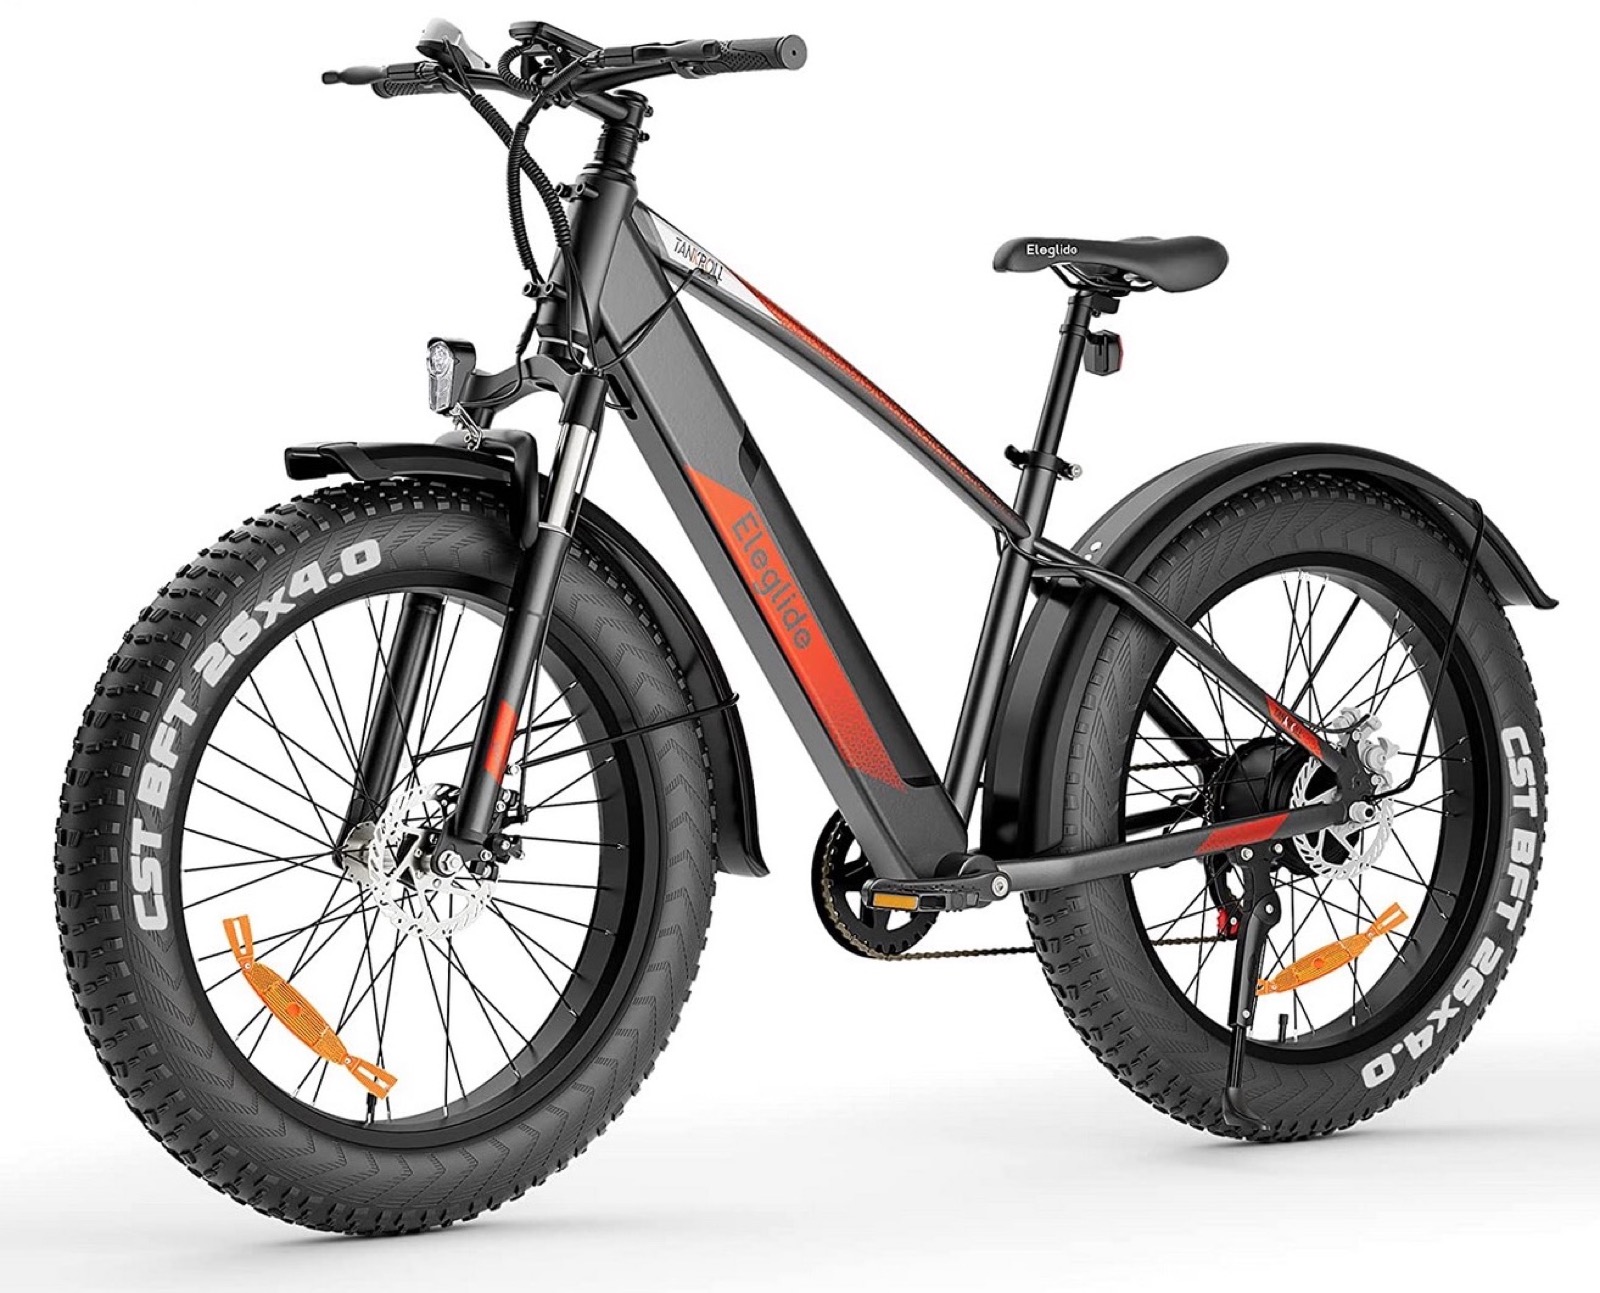 Le bici elettriche Eleglide scontate fino a 100 € su Amazon